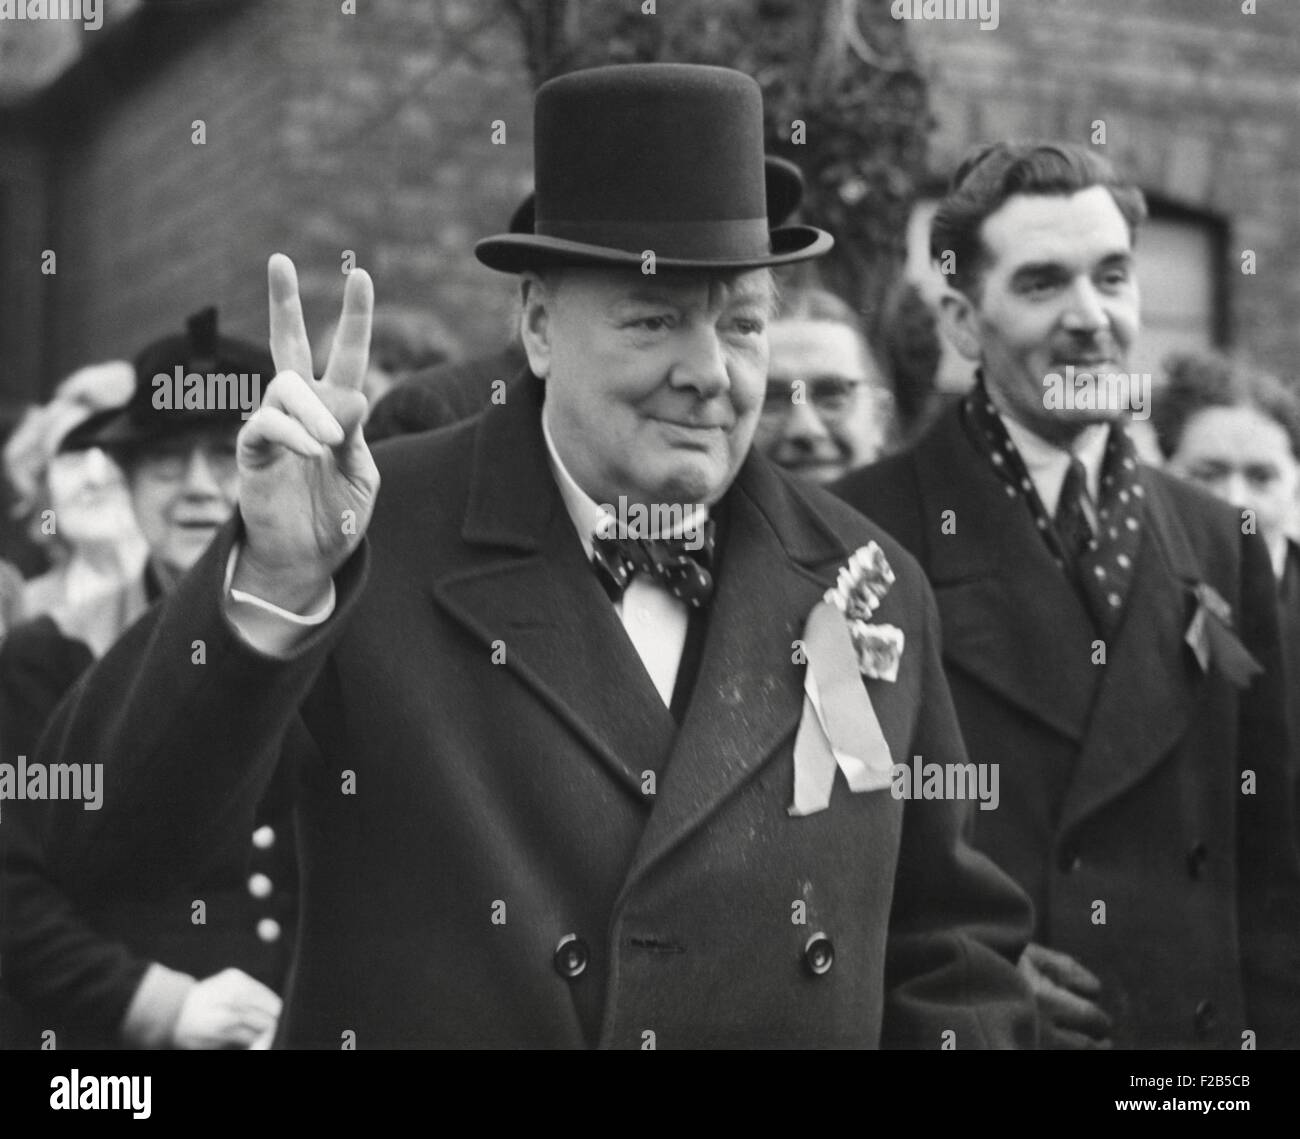 Konservative Partei Führer Winston Churchill gibt seinem vertrauten Victory-Zeichen. Er machte eine Lastminute Kampagne-Tour vor den allgemeinen Wahlen. Woodford, Essex. 23. Februar 1950. -(BSLOC 2014 17 60) Stockfoto